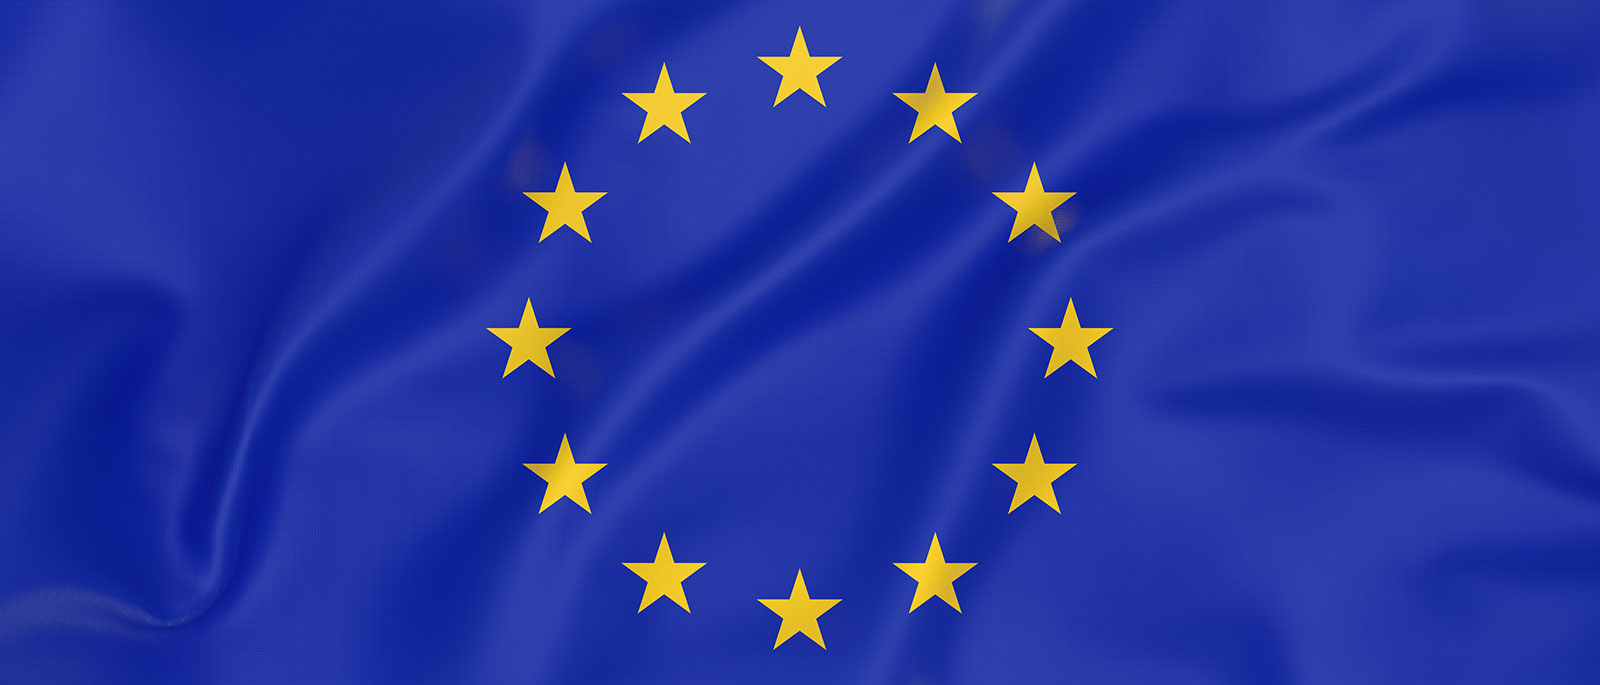 « Le drapeau de l'Union européenne et la politique économique européenne »